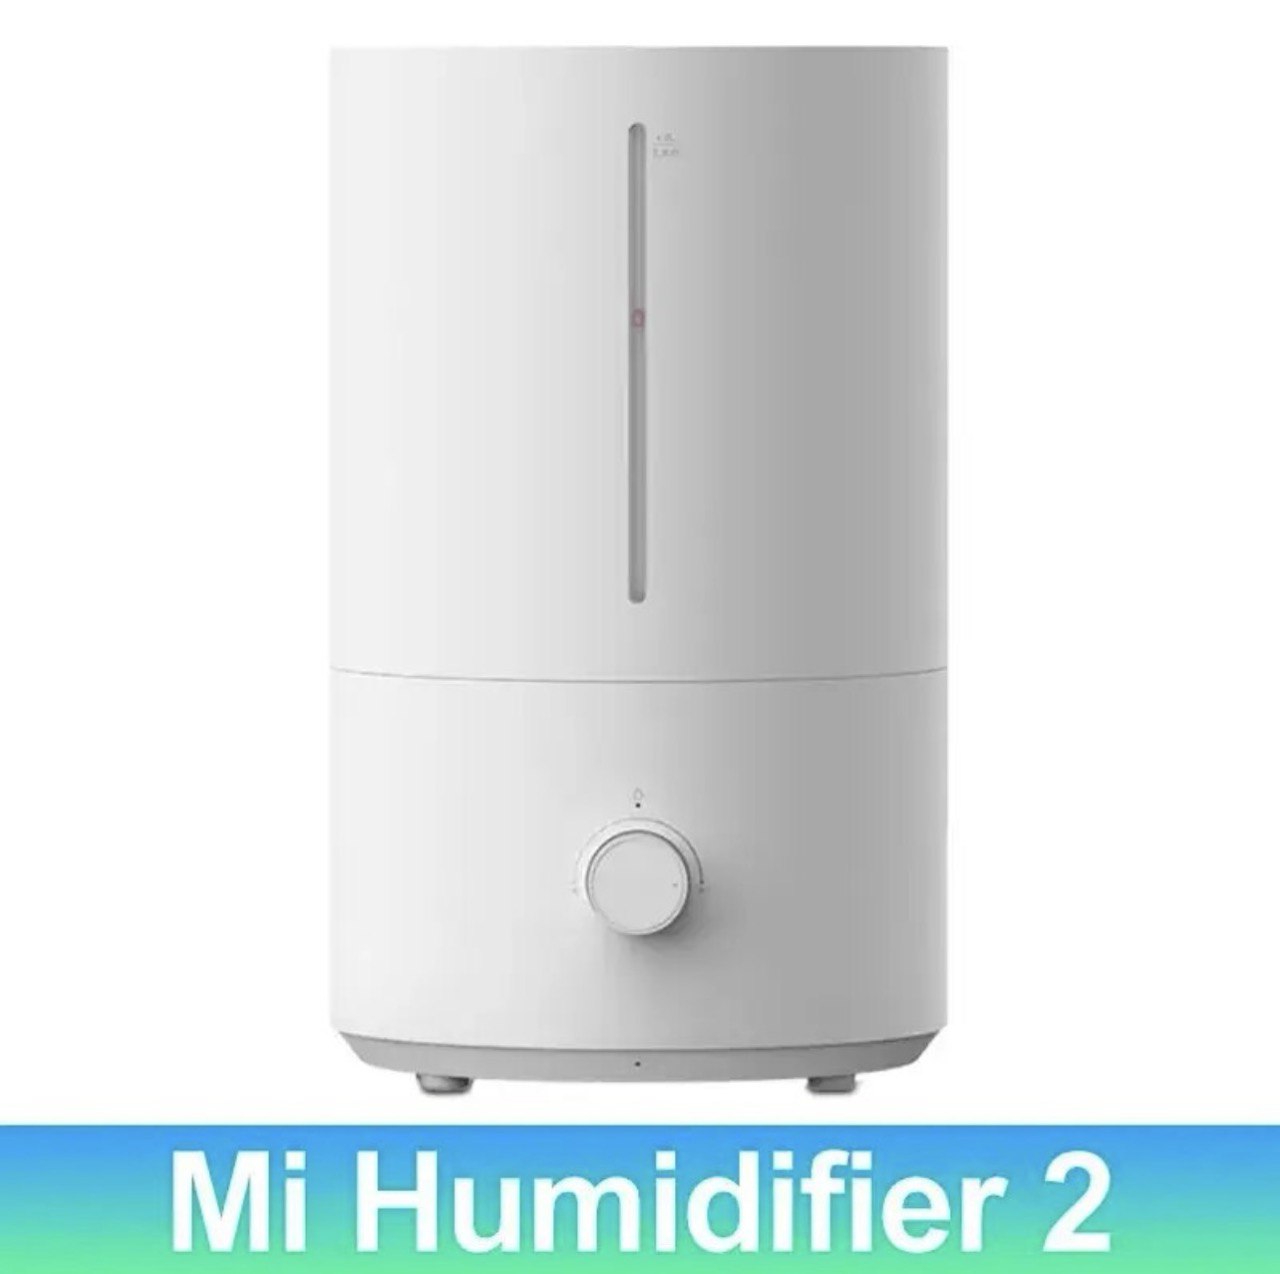 Otletayka™ Mi Humidifier 2